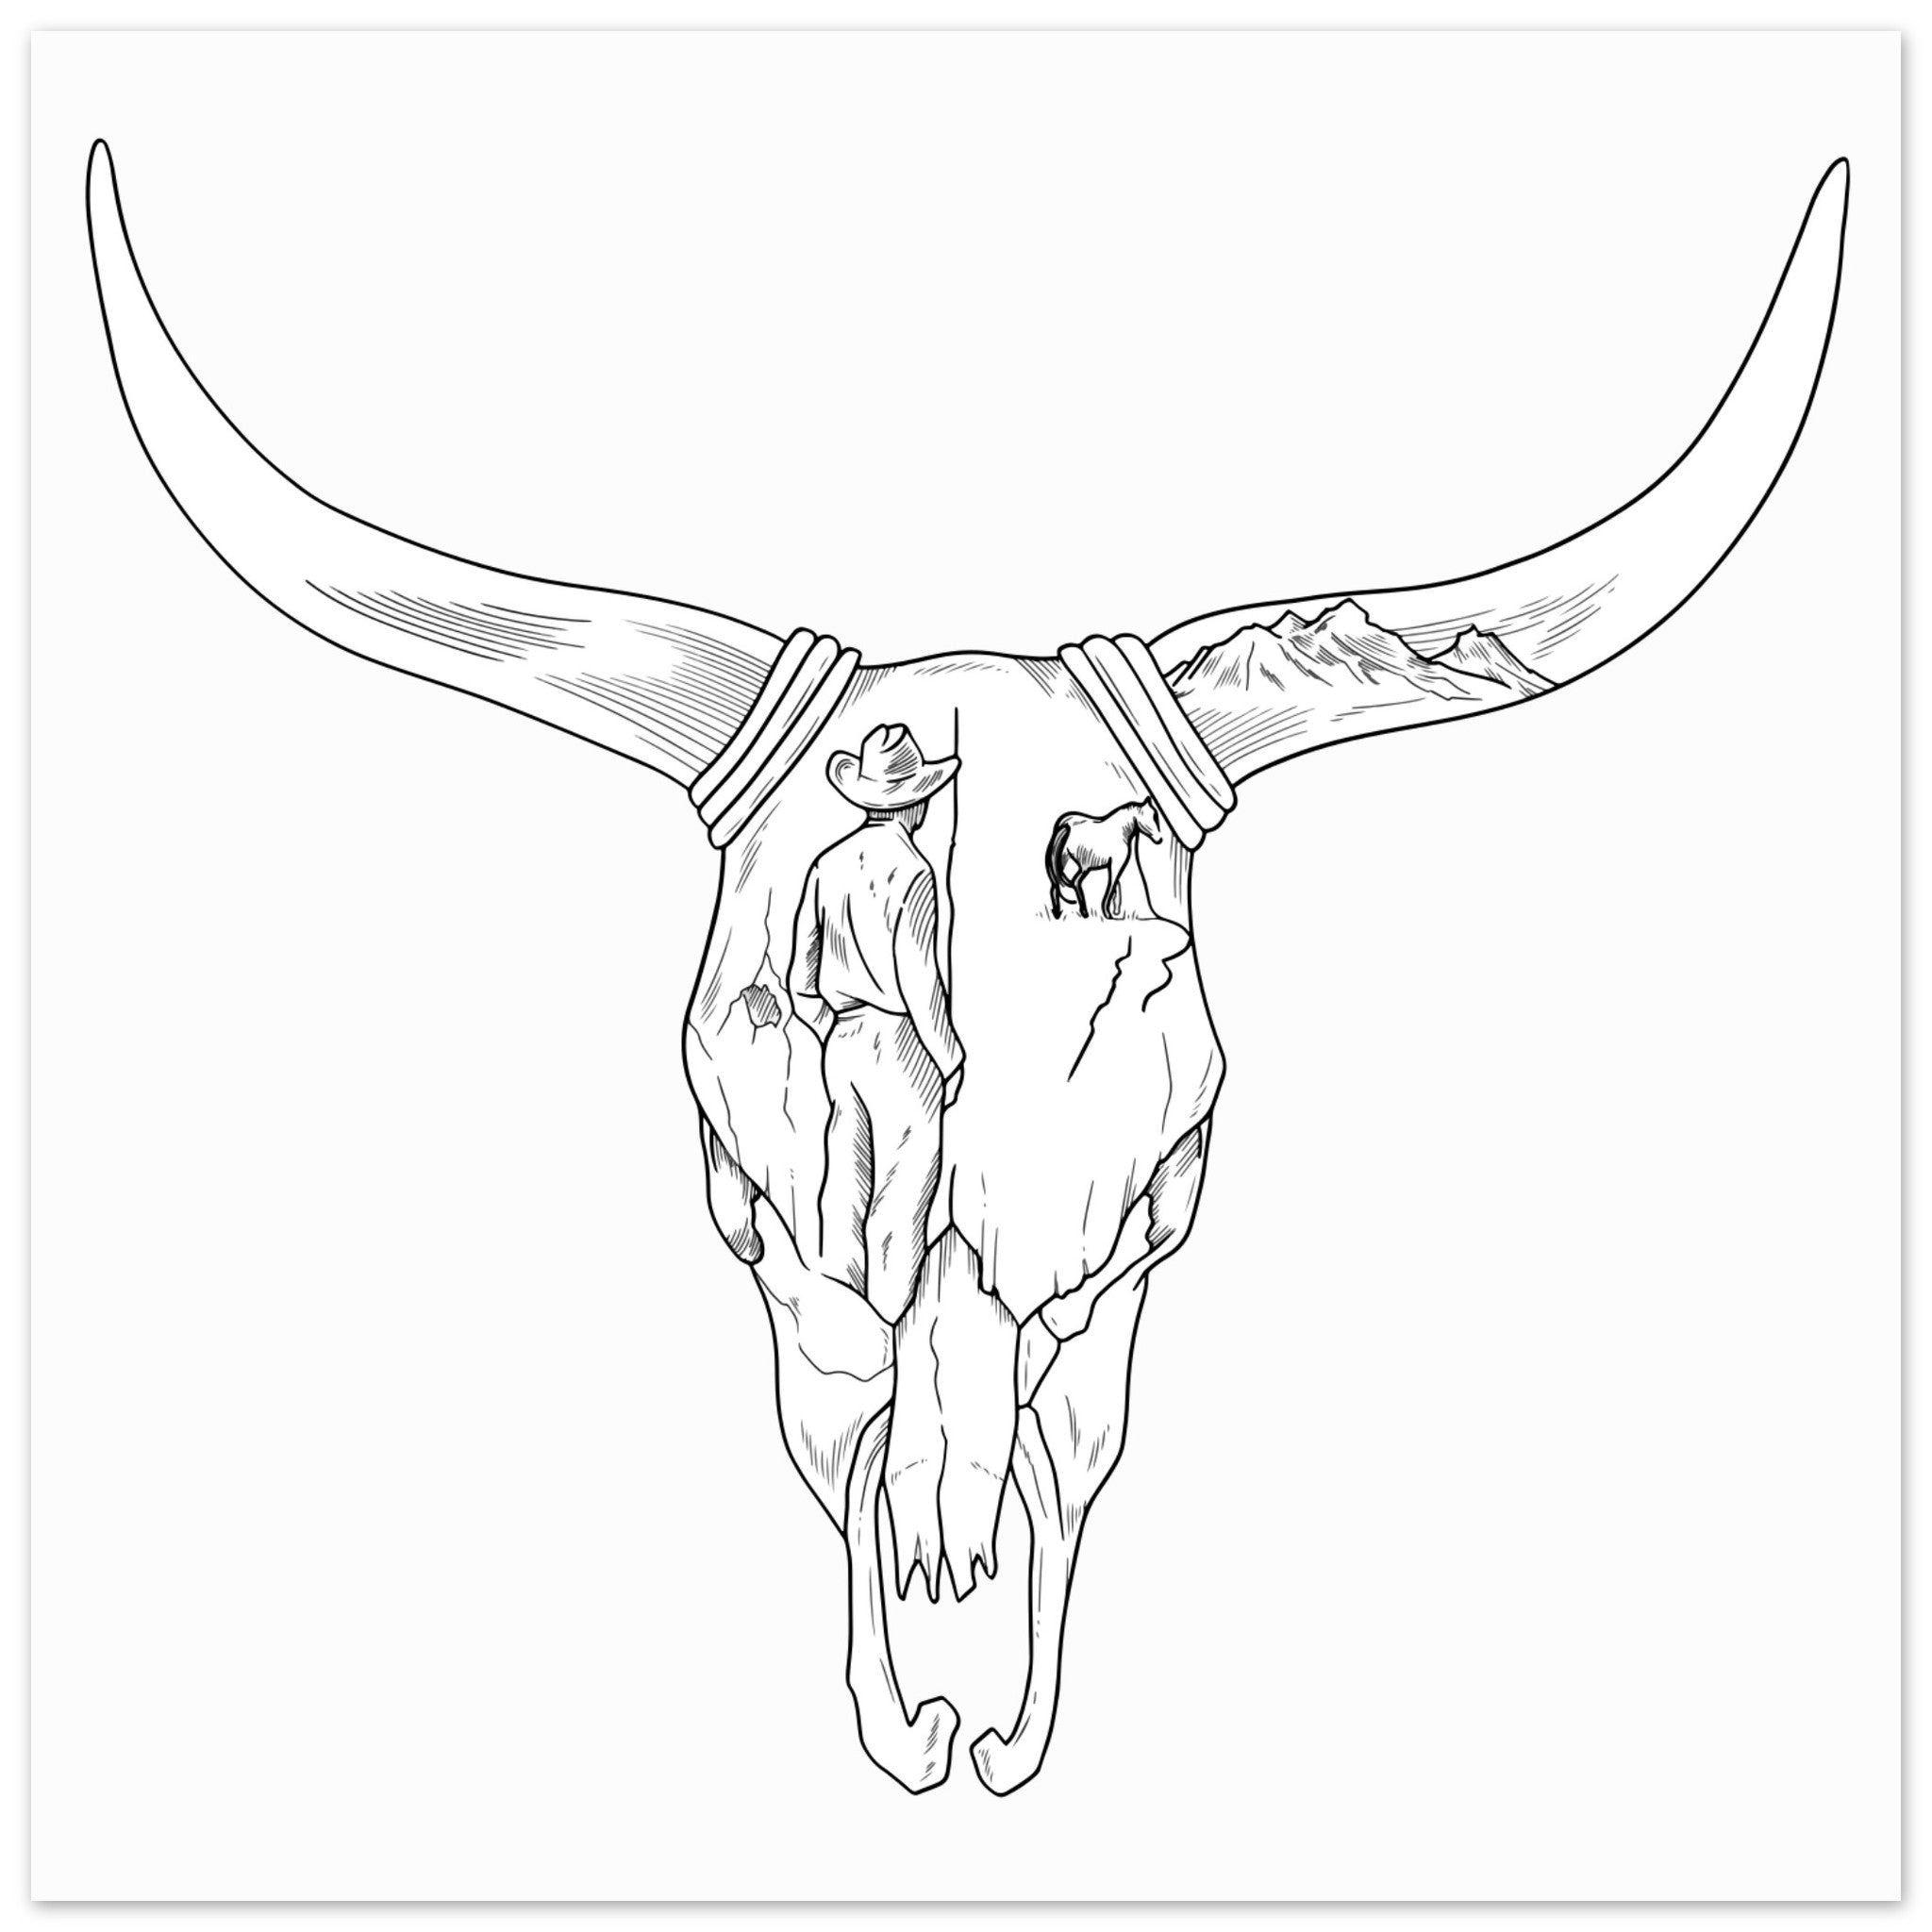 Zach Bryan Inspired Long Horn Skull Wooden Framed Graphic Print